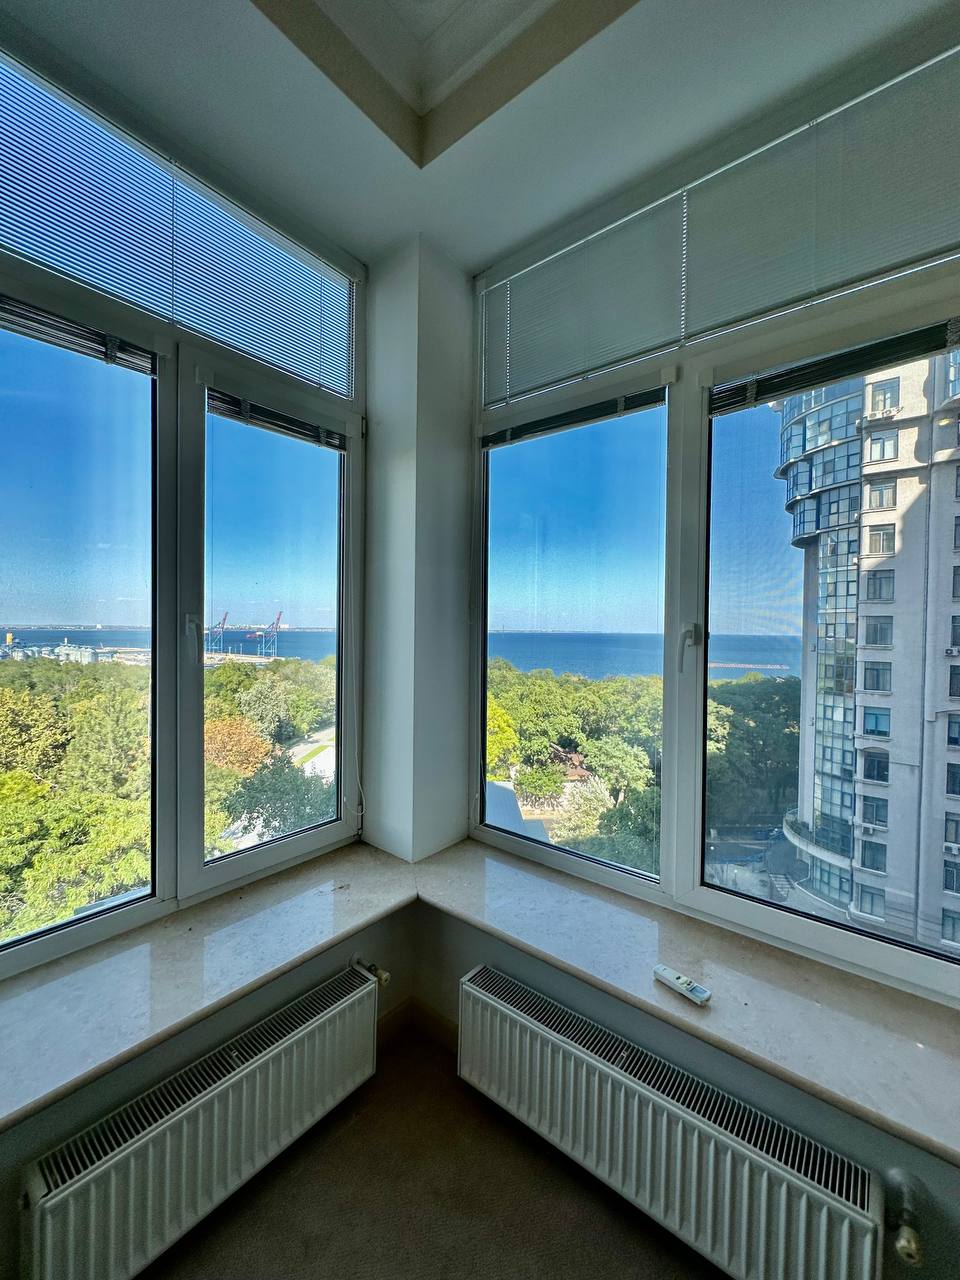 Продам квартиру в ЖК Мерседес с прямым видом моря